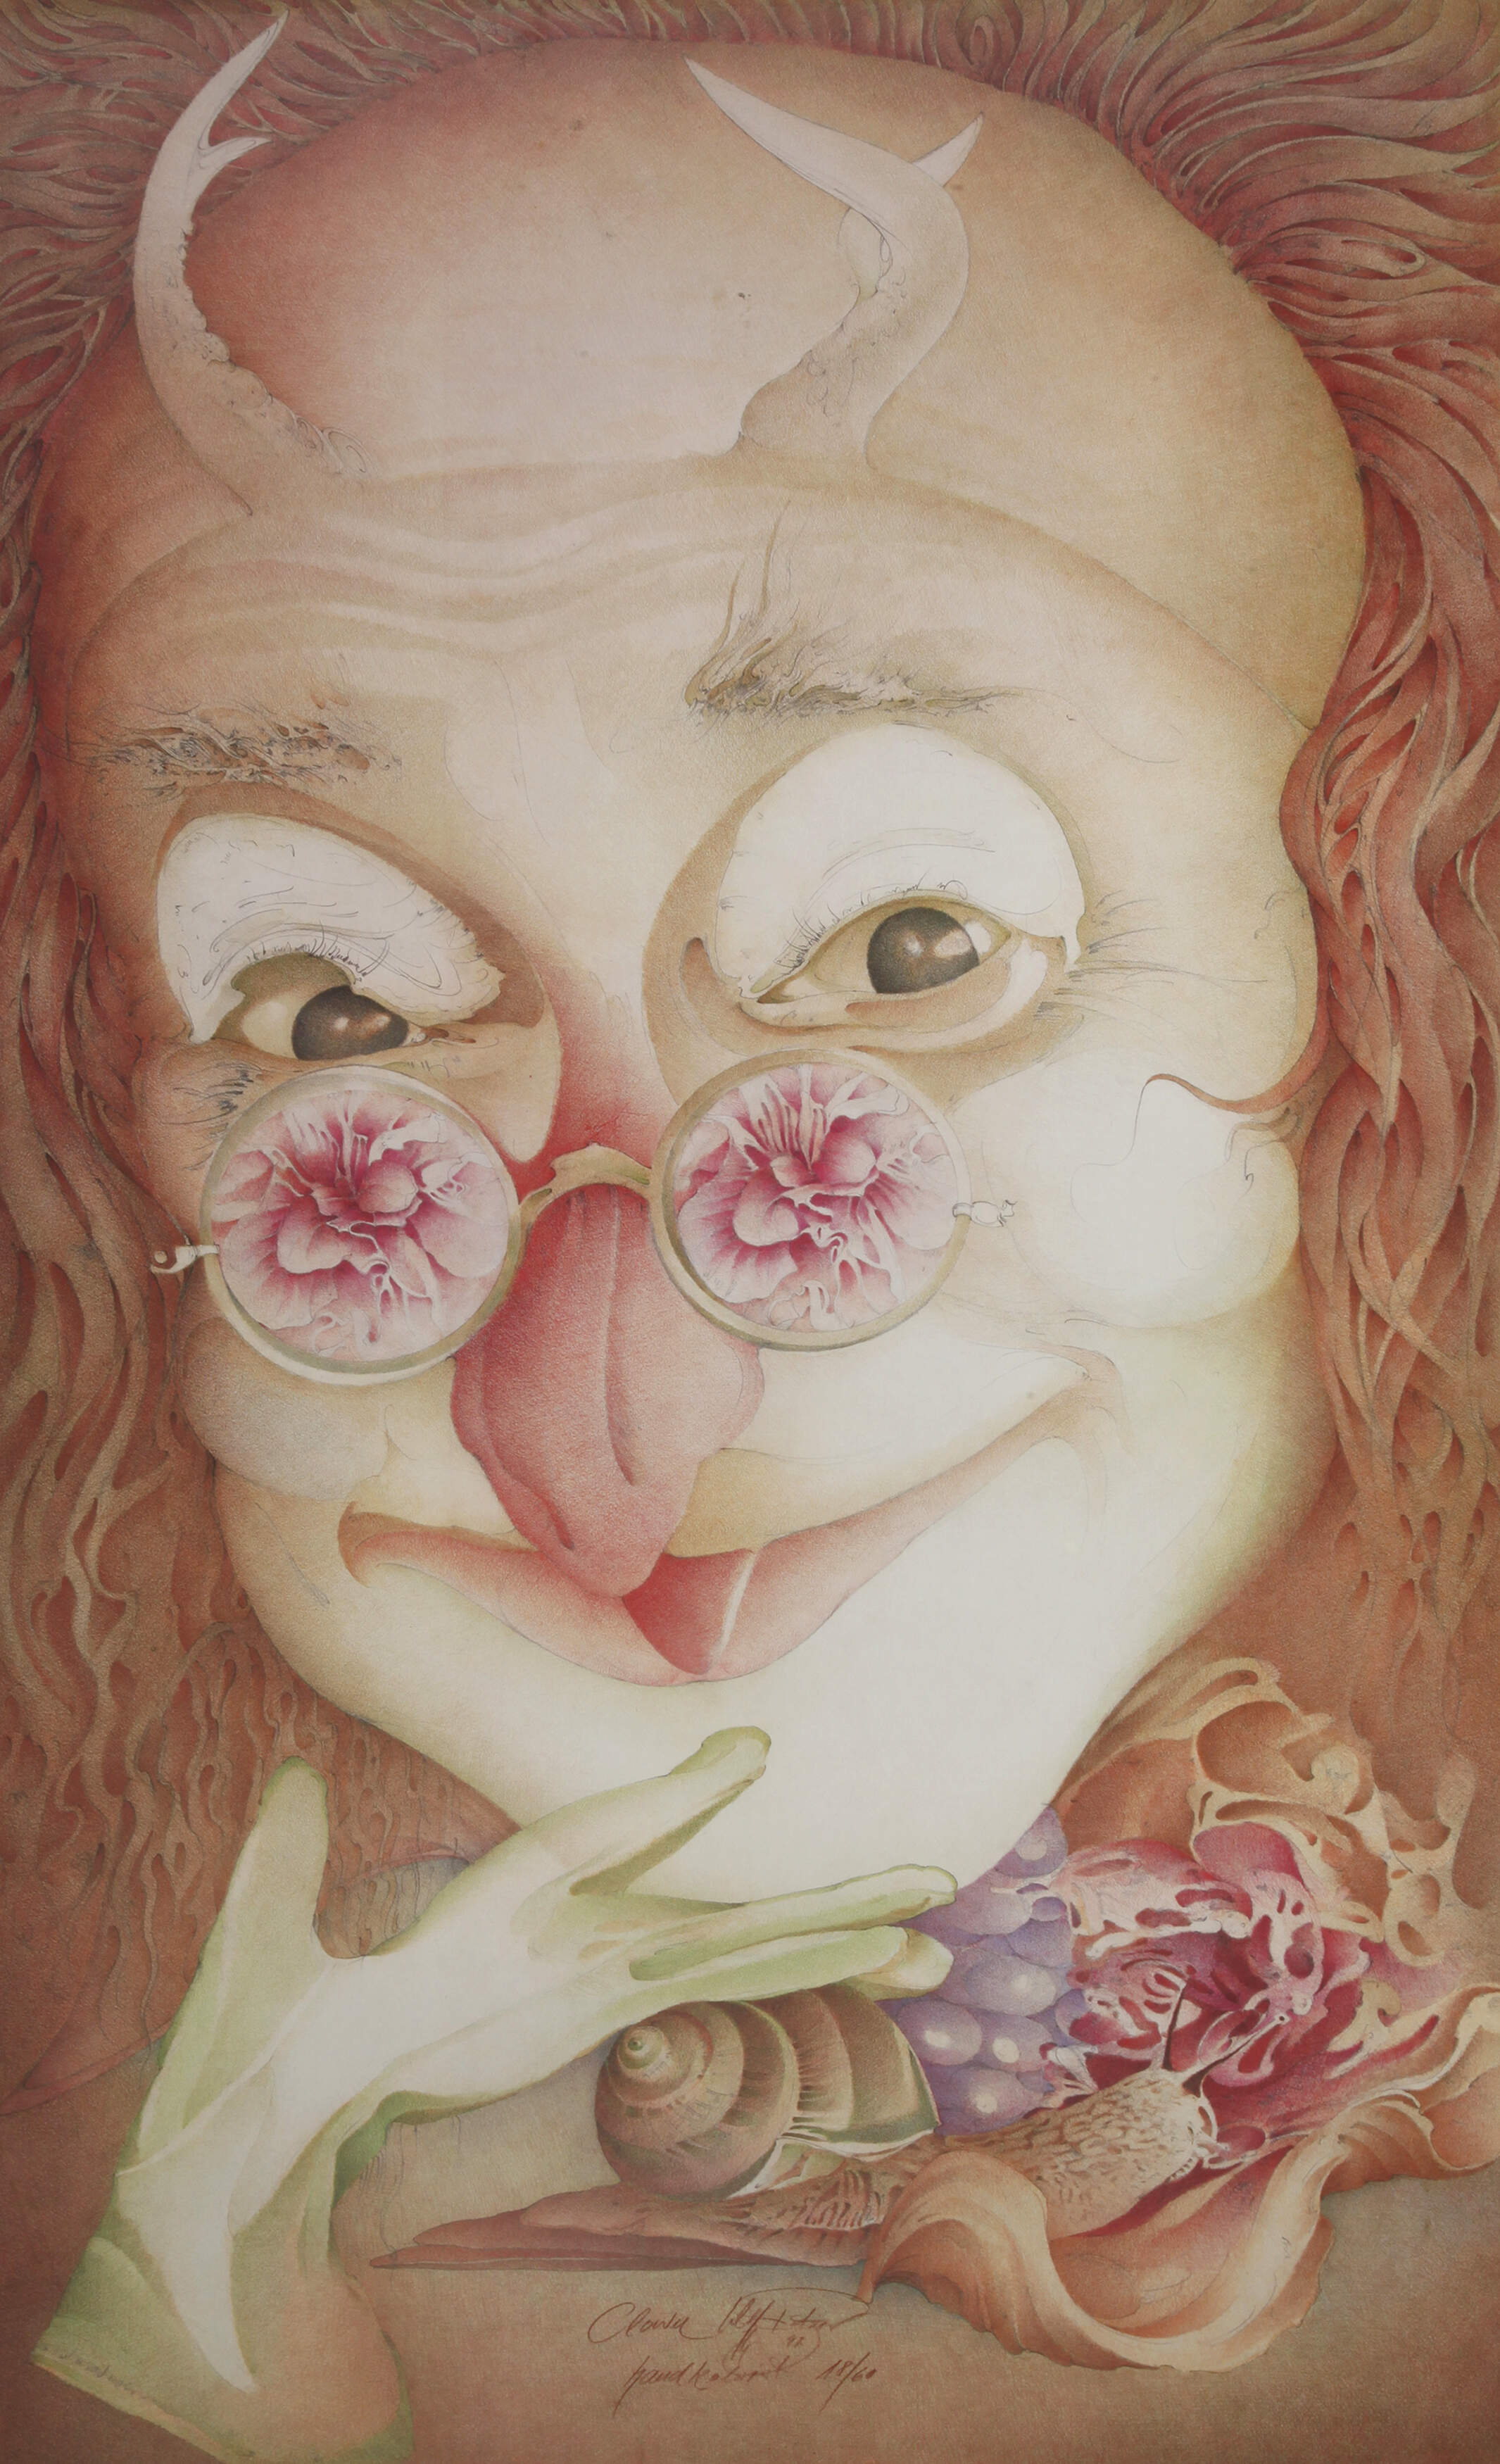 Wolfgang Fratscher, "Clown"